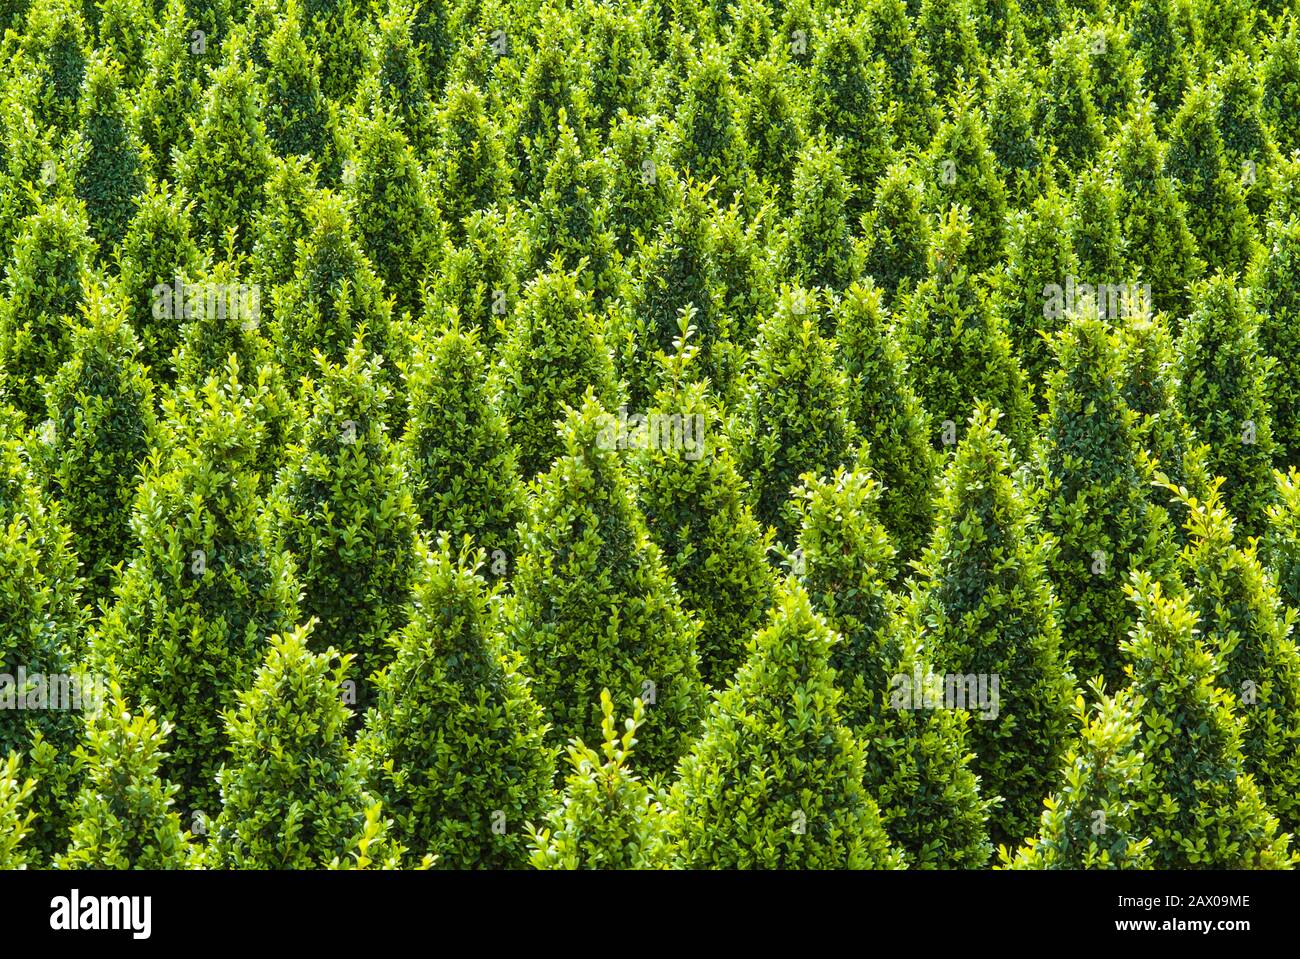 Croissance industrielle des arbres buxus verts sculptés Banque D'Images